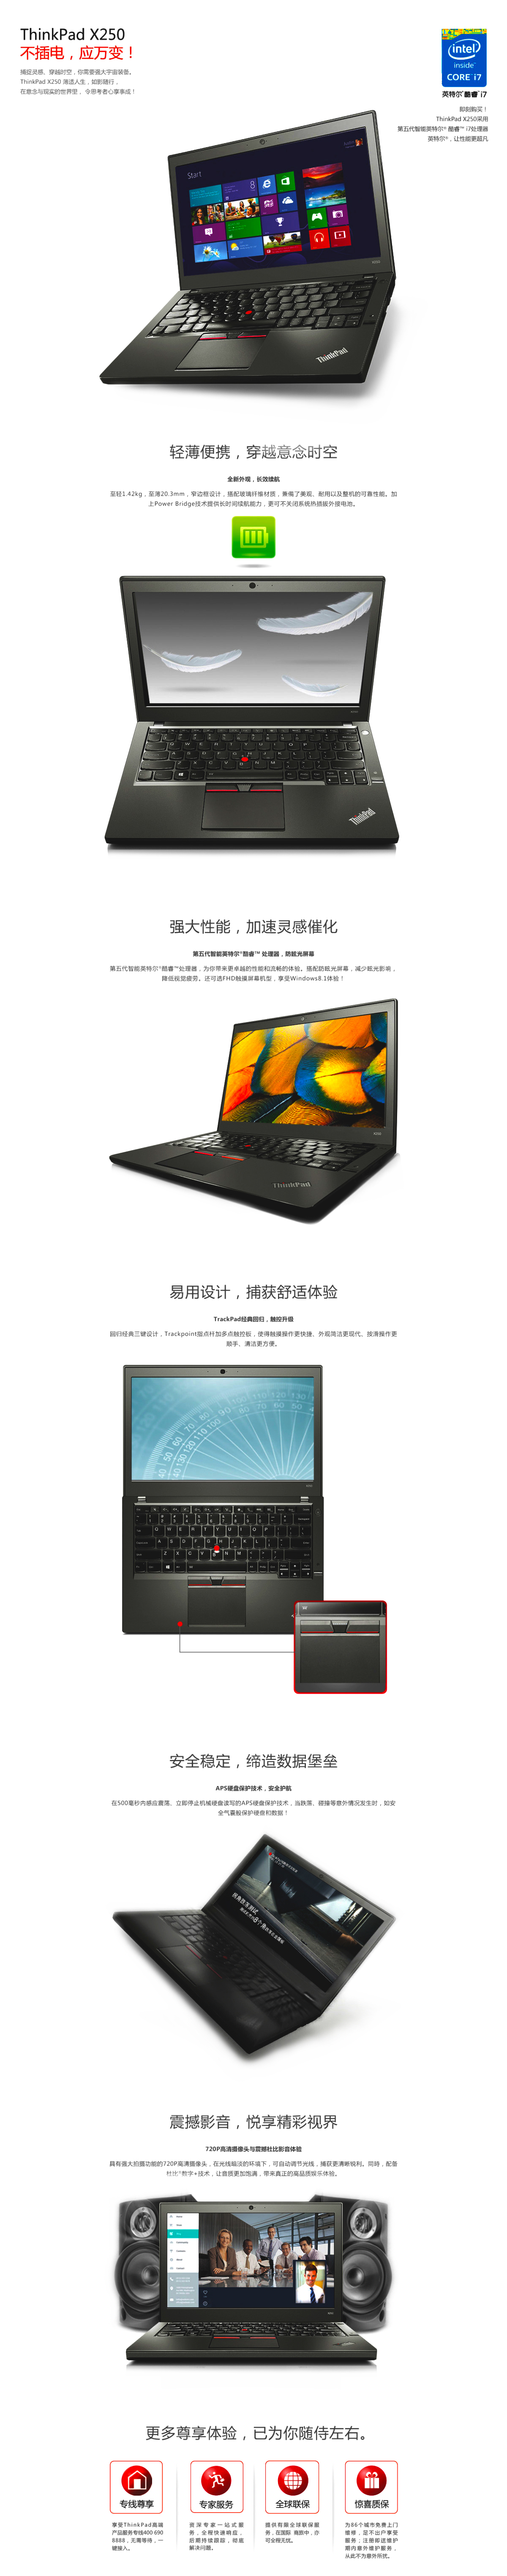 ThinkPad-X250.jpg